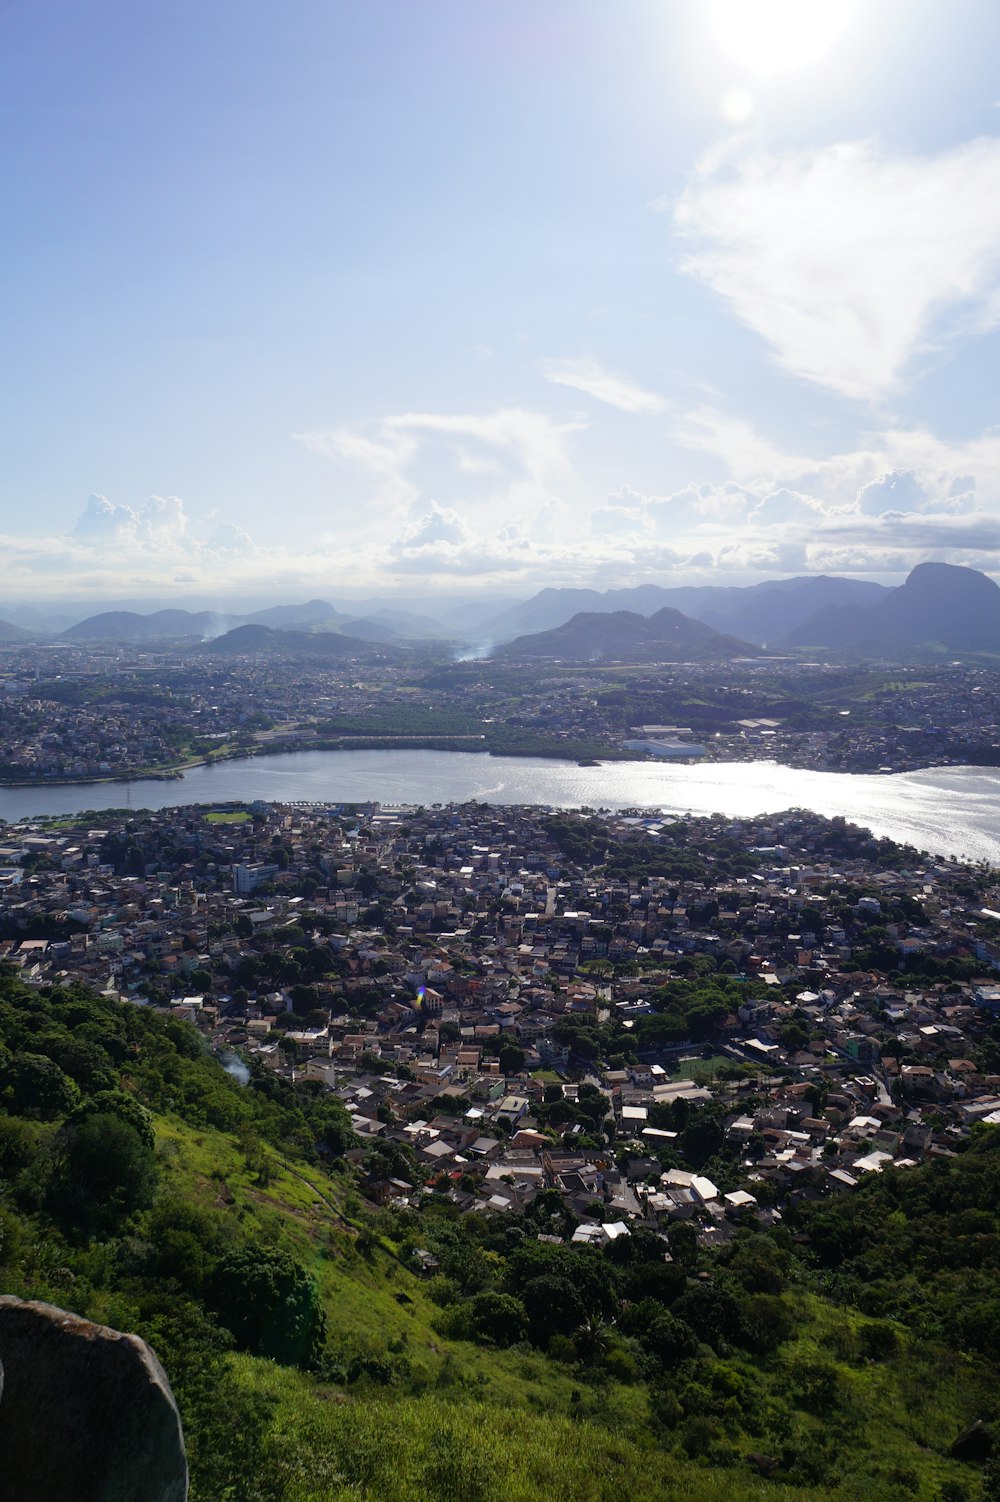 a view of a city and a lake from the top of a hill